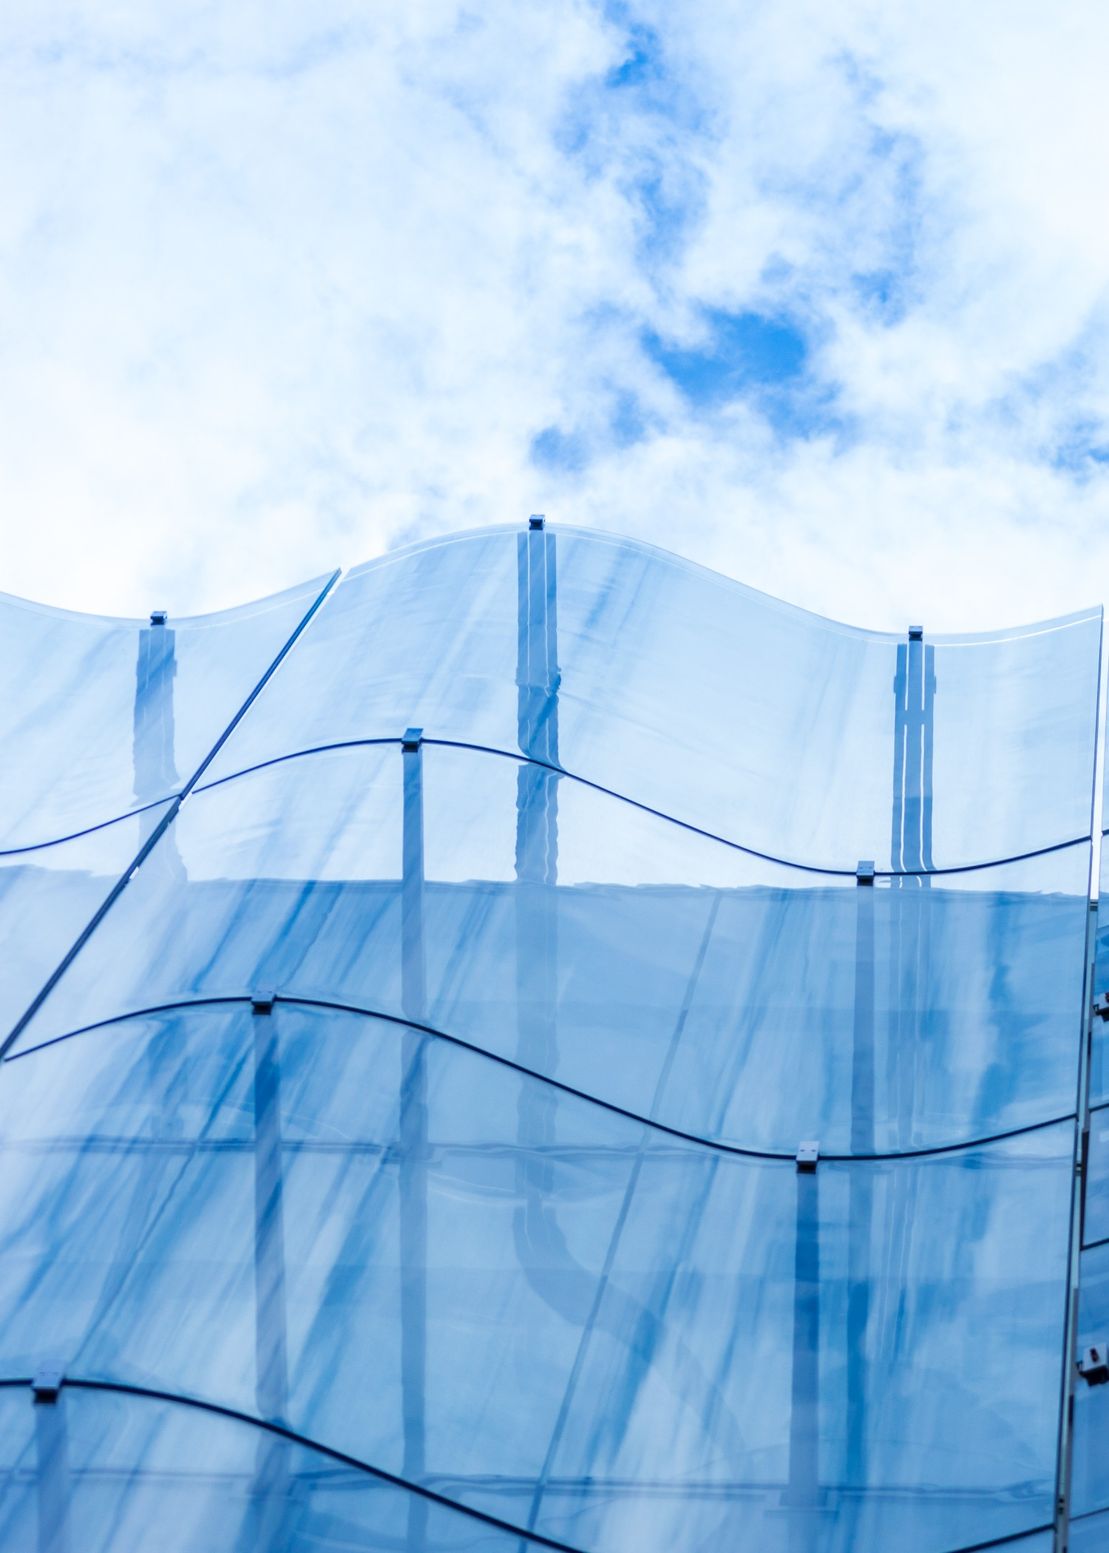 Detalle de la fachada de muro cortina de vidrio ondulado de un bonito edificio moderno, cielo y nubes reflejándose en él